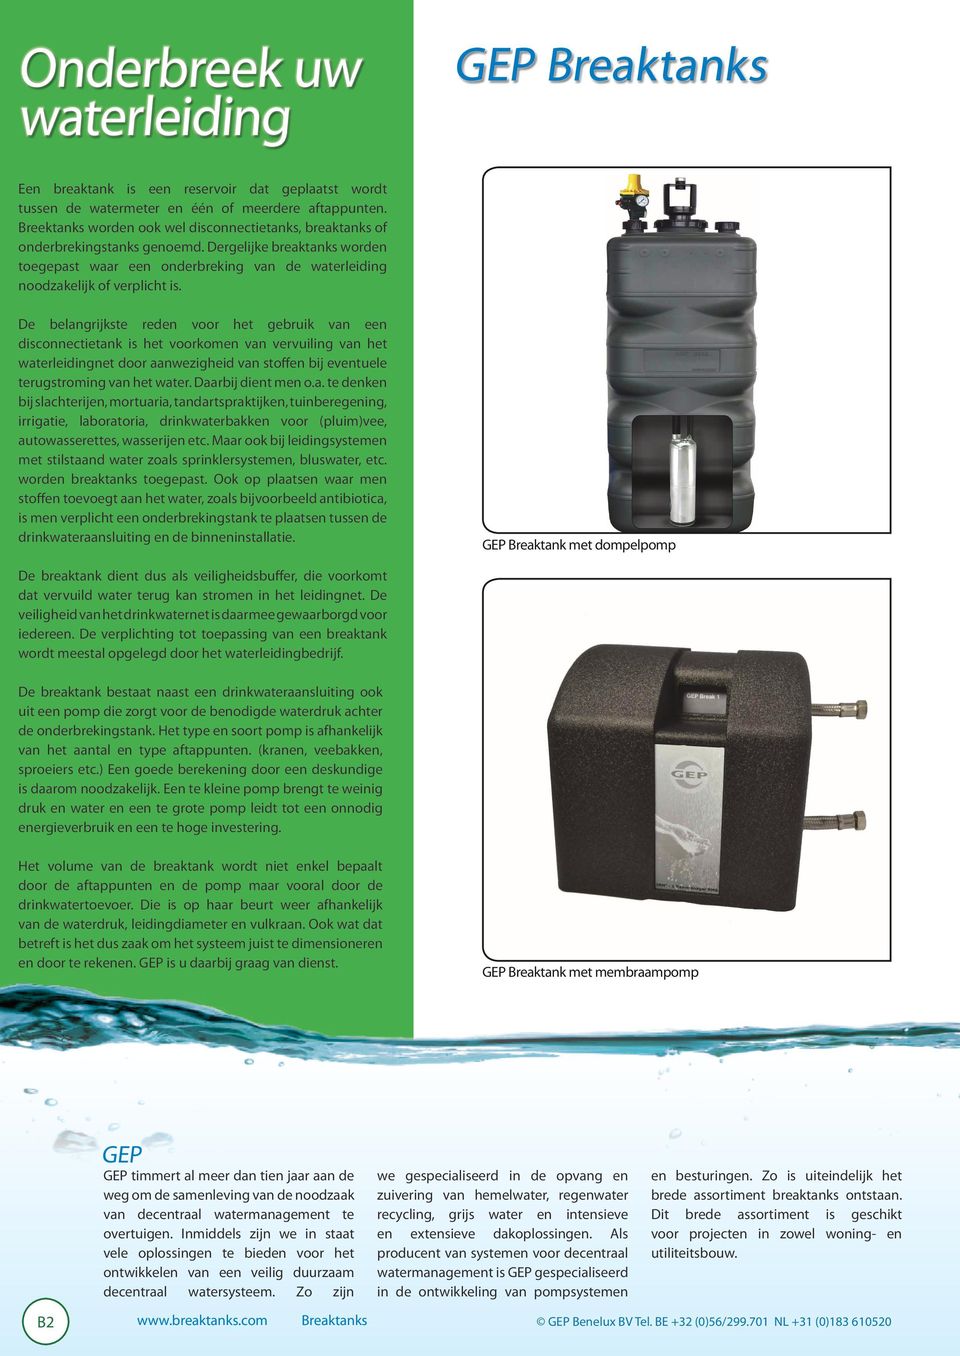 De belangrijkste reden voor het gebruik van een disconnectietank is het voorkomen van vervuiling van het waterleidingnet door aanwezigheid van stoffen bij eventuele terugstroming van het water.